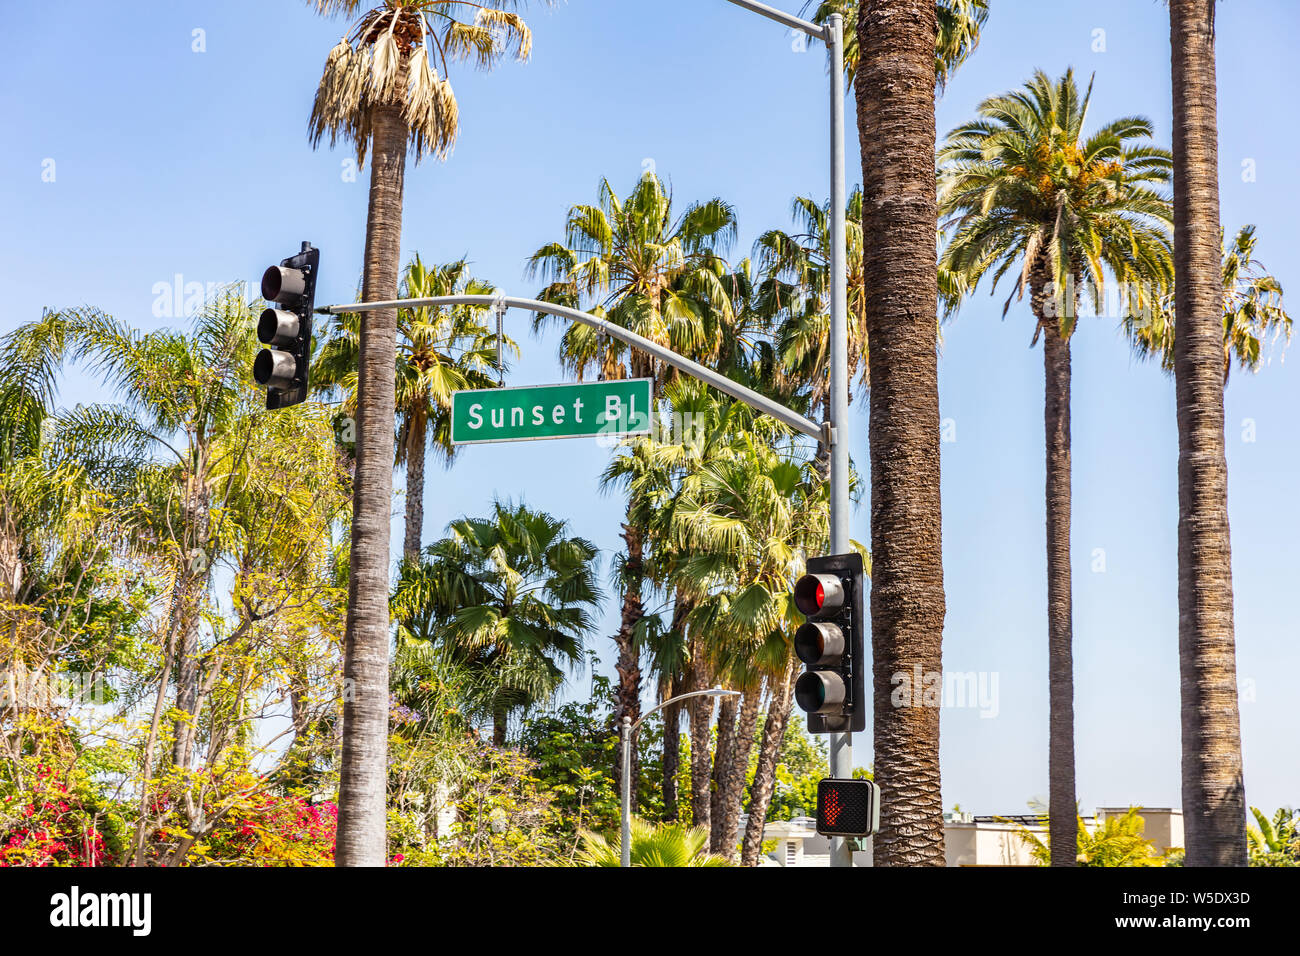 Los Angeles, California, EE.UU. El 31 de mayo de 2019. Sunset Beato texto en señal verde, los semáforos, las palmeras y el cielo azul de fondo. Jornada soleada de primavera. Foto de stock